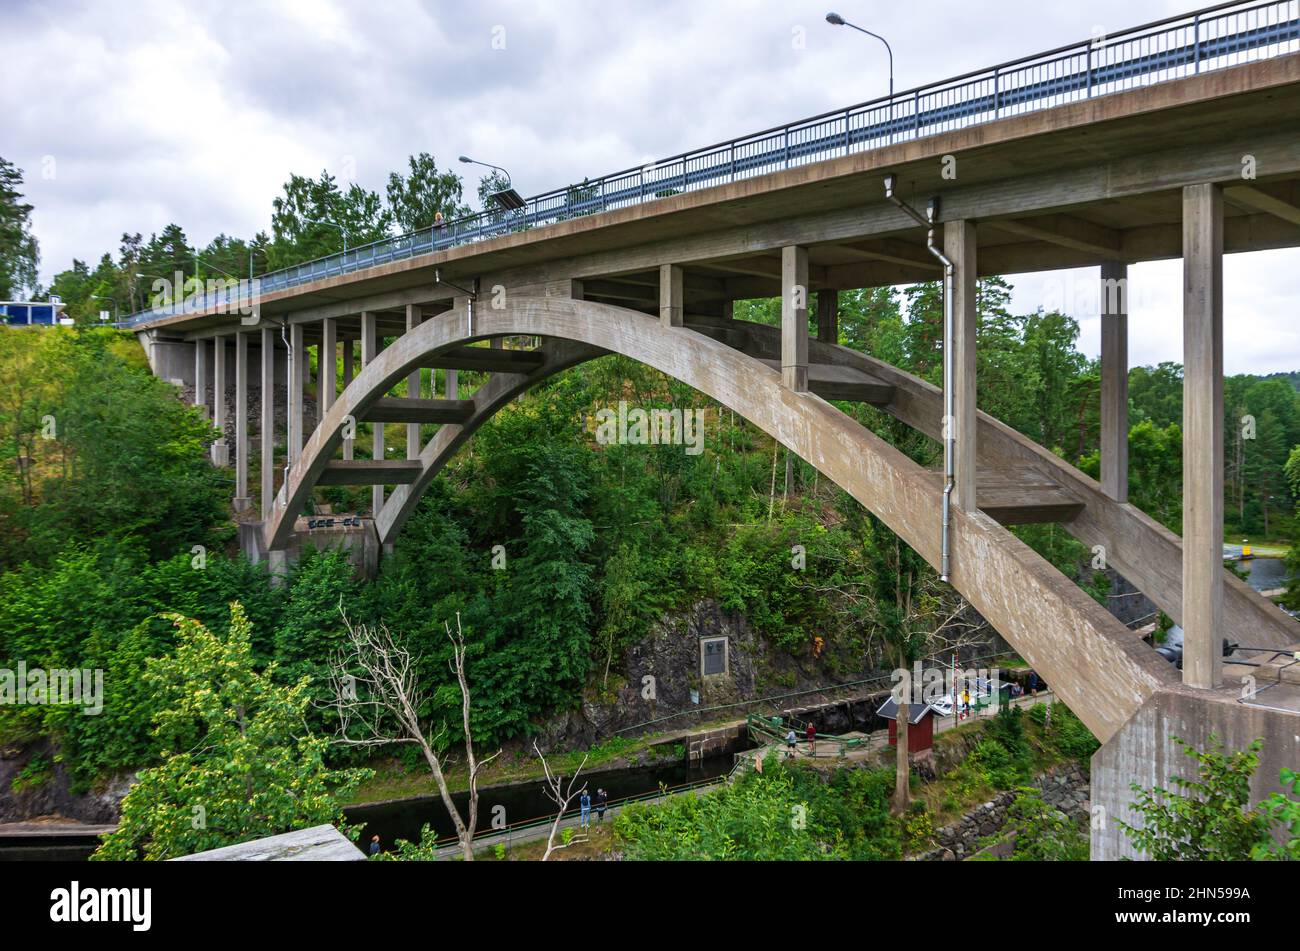 Canal Dalsland et aqueduc à Haverud, Dalsland, Västra Götalands län, Suède : pont voûté au-dessus de l'aqueduc à Haverud. Banque D'Images